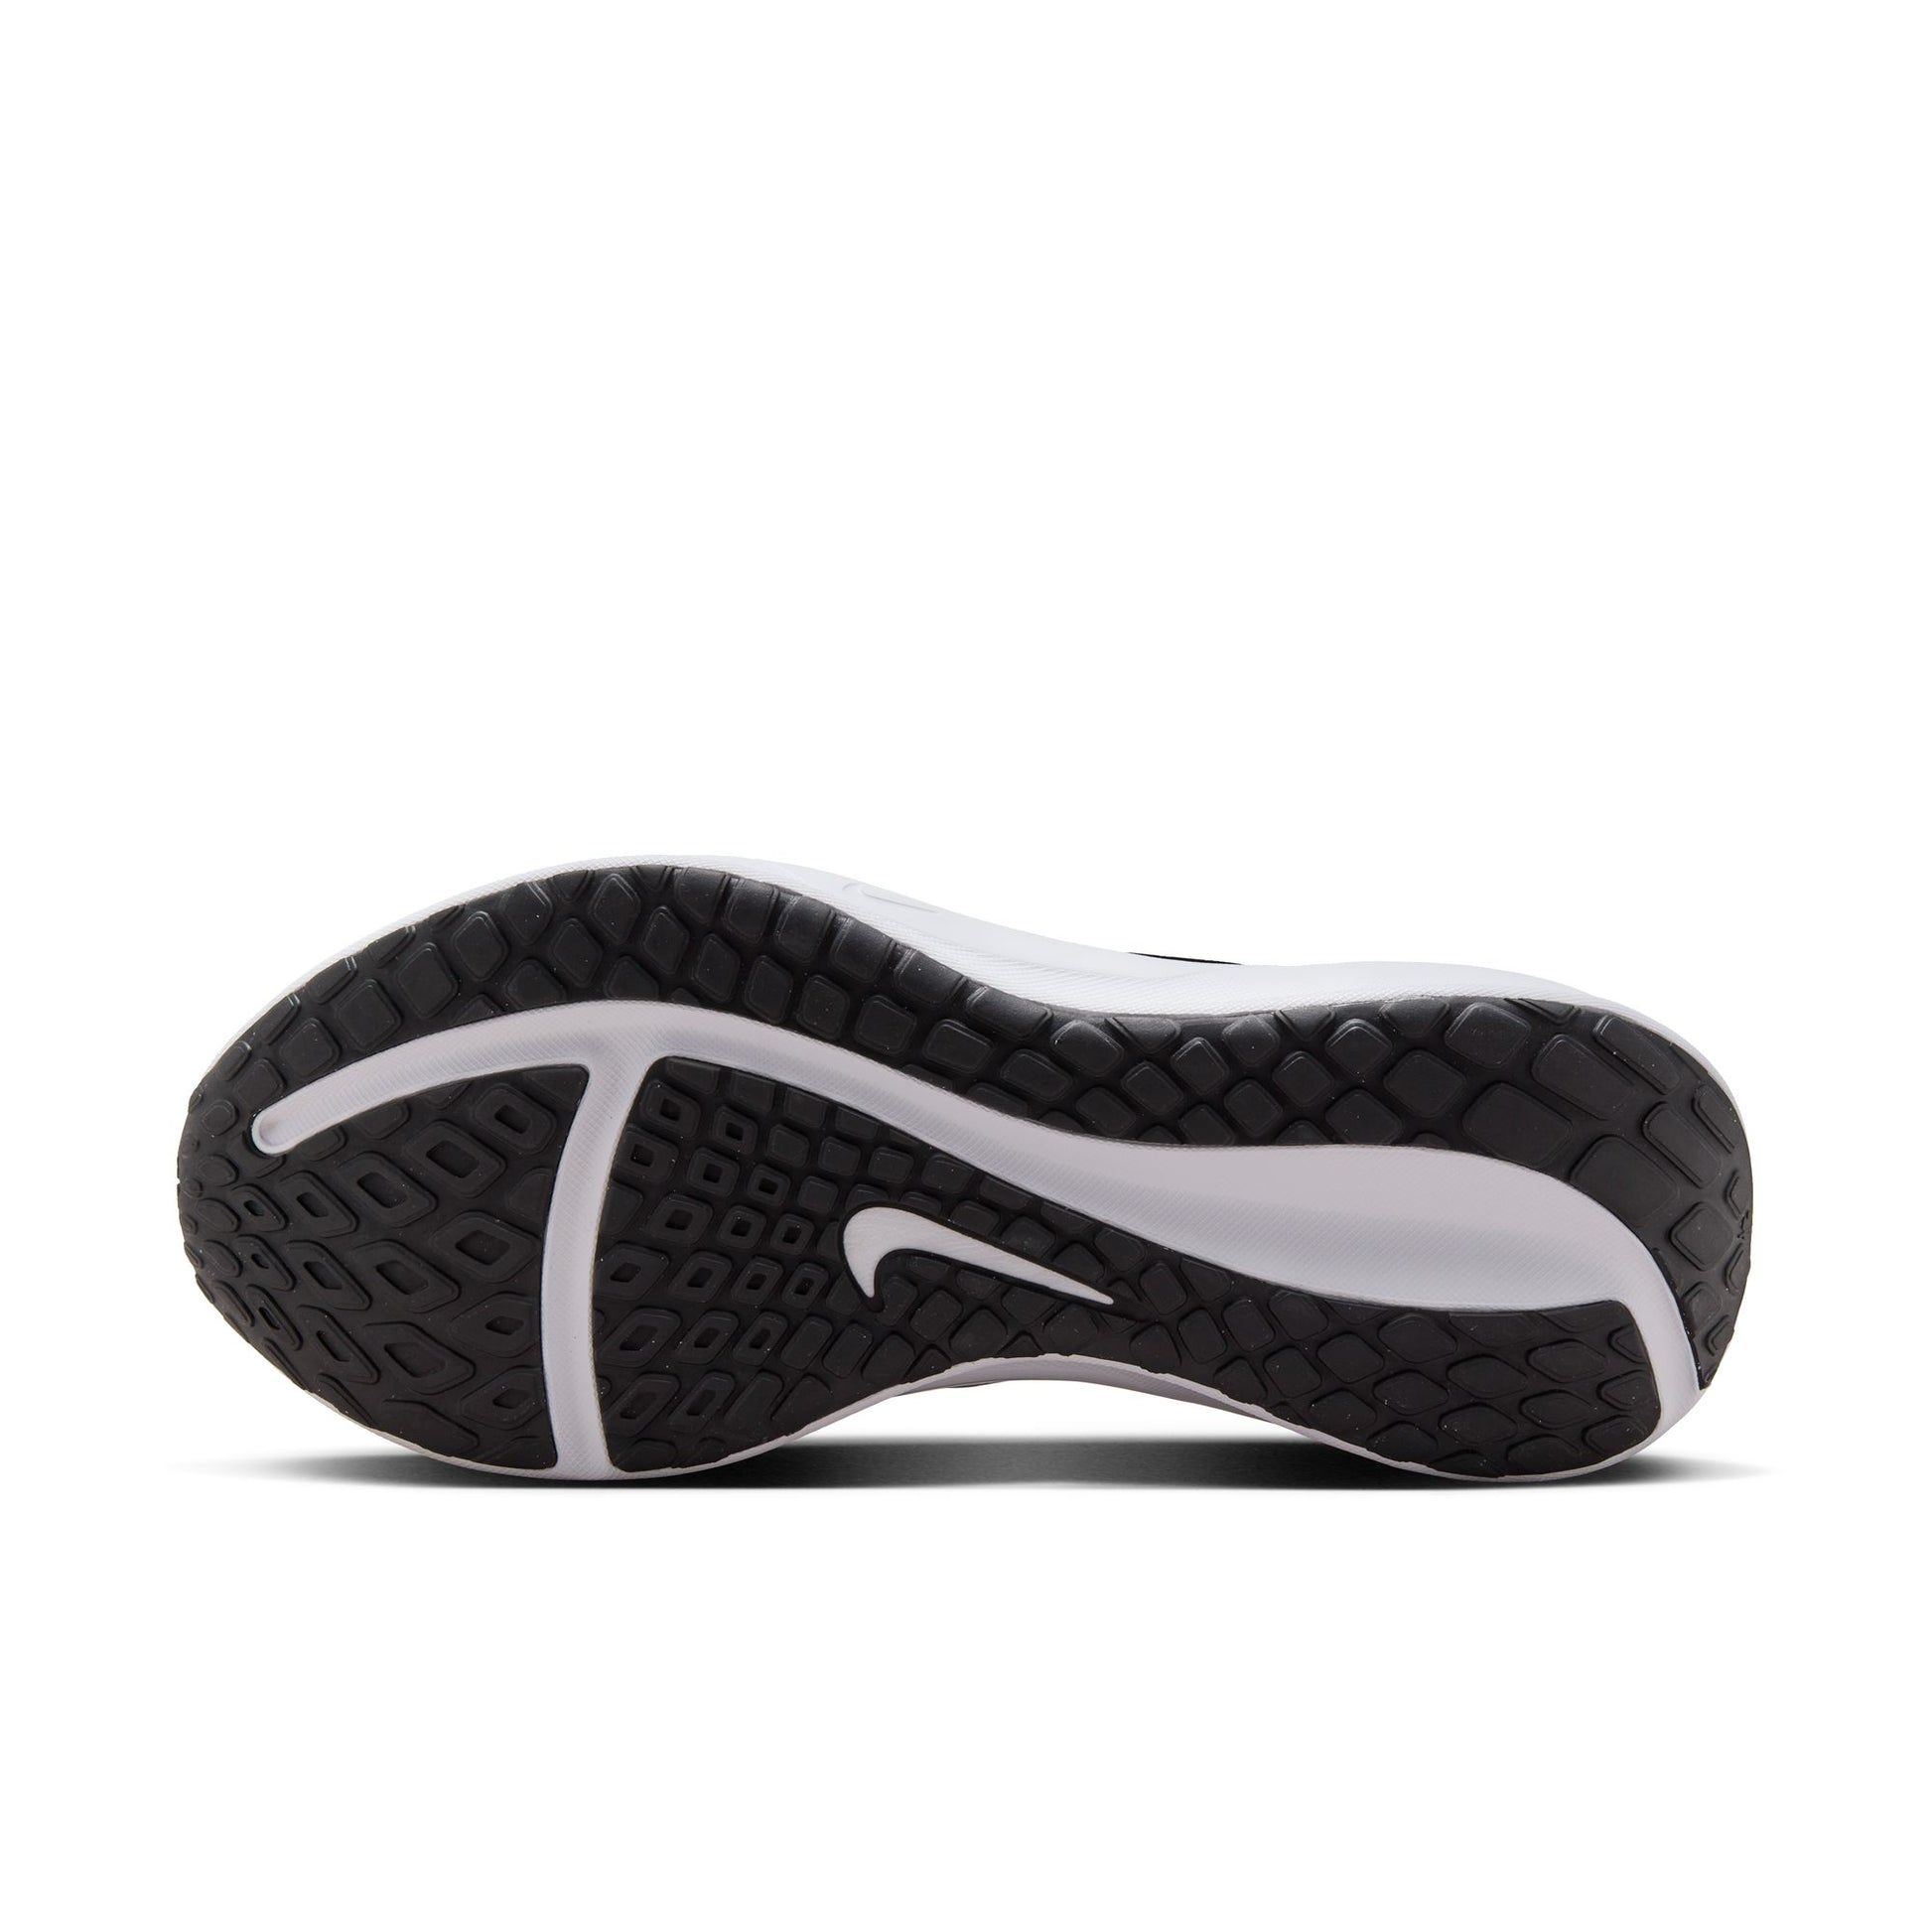 נעלי ספורט לגברים Downshifter 13 בצבע לבן כחול ושחור